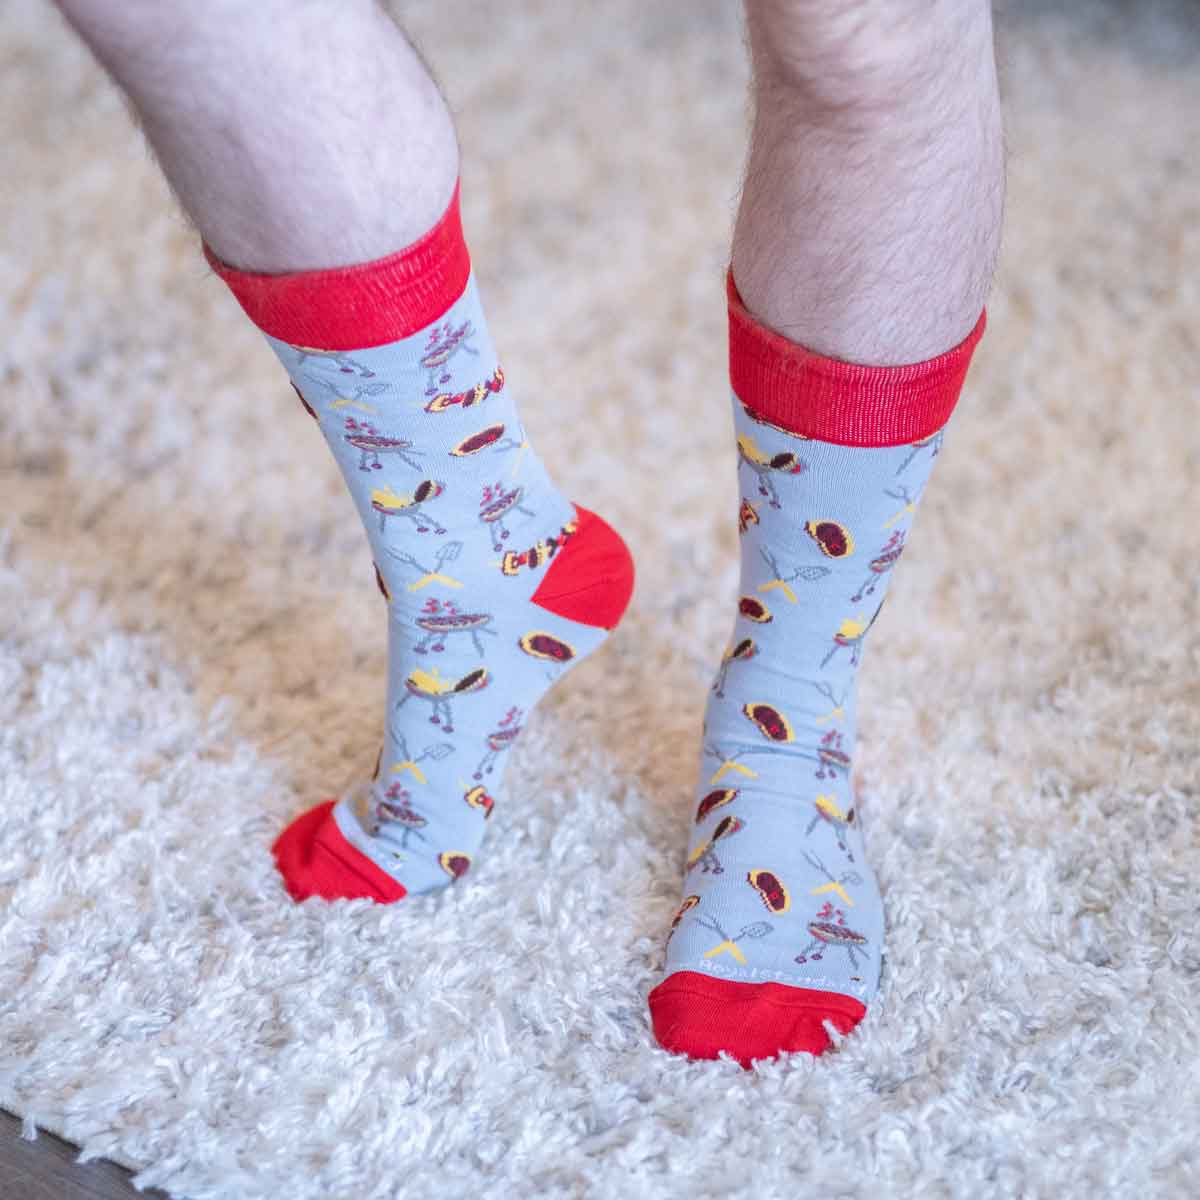 Men's BBQ Socks